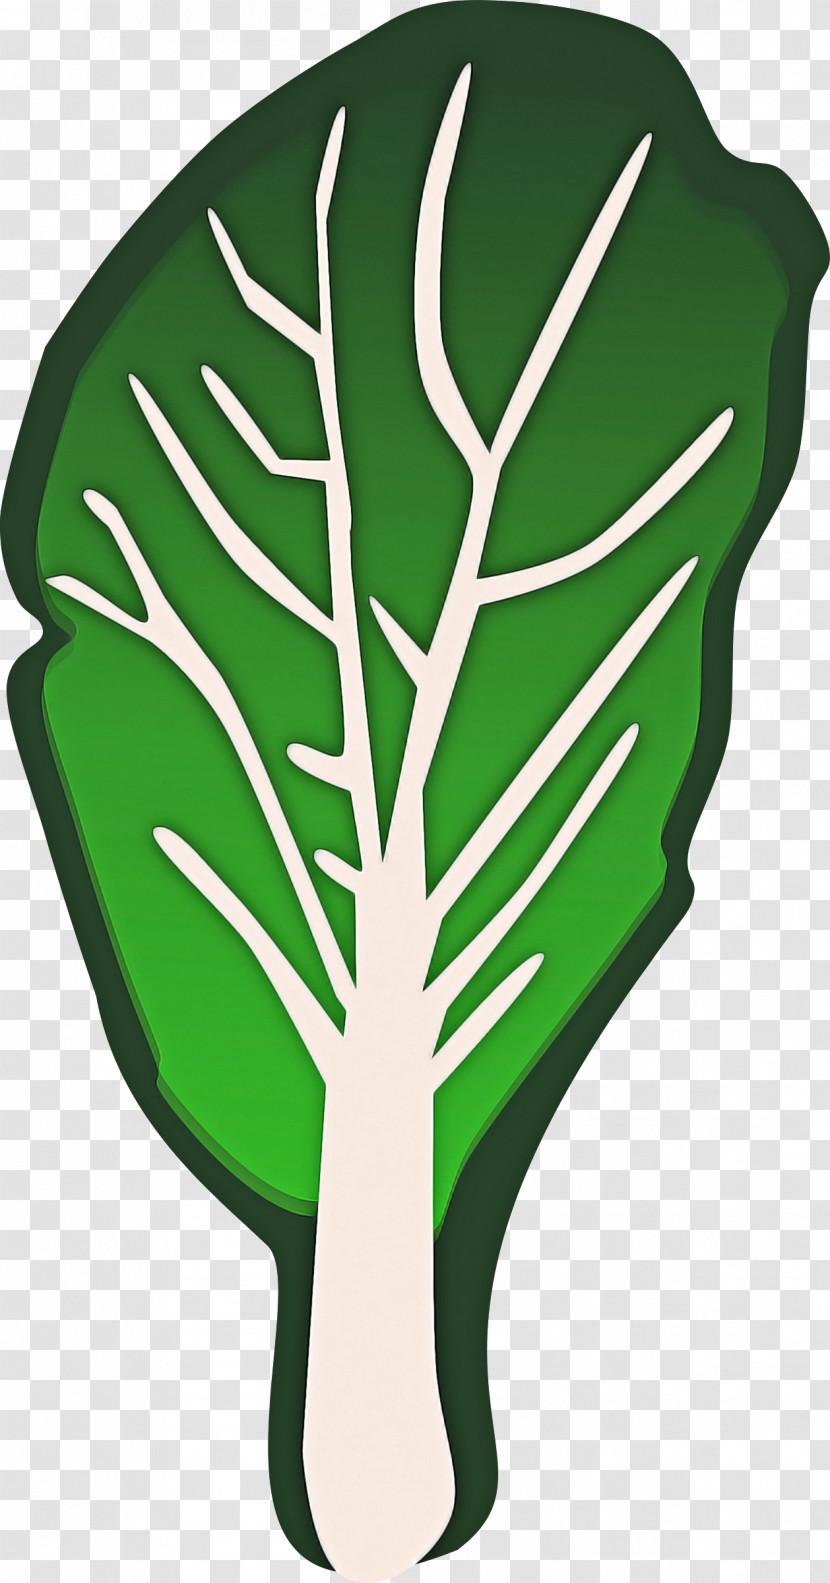 Green Leaf Monstera Deliciosa Plant Leaf Vegetable Transparent PNG